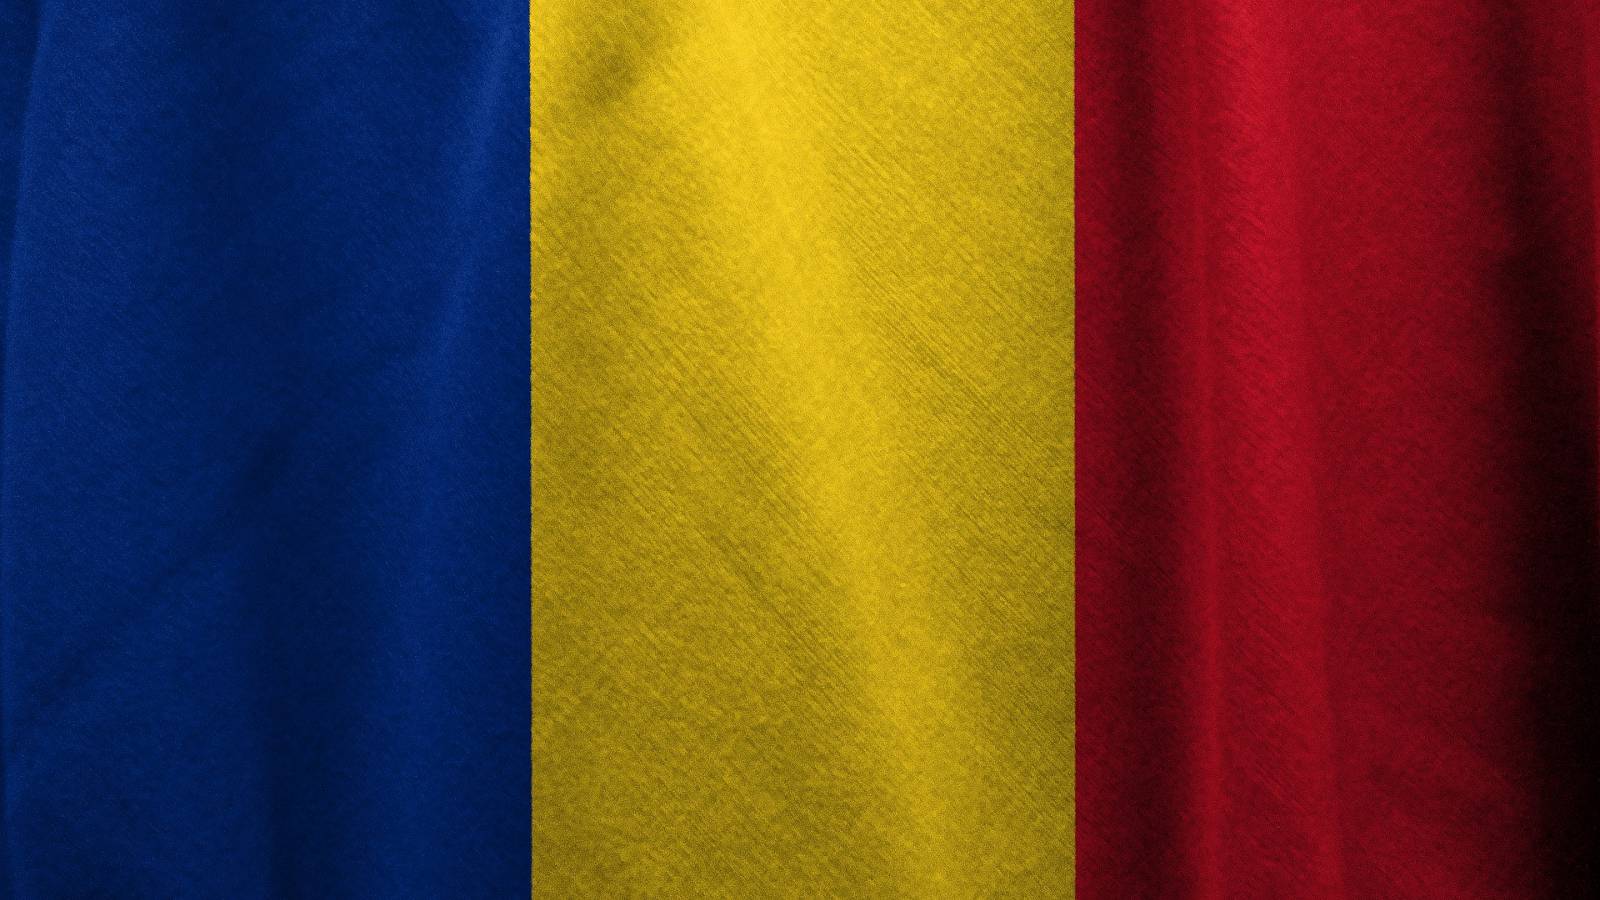 O ile spadły nowe przypadki Covid-19 w Rumunii w ciągu ostatnich 7 dni